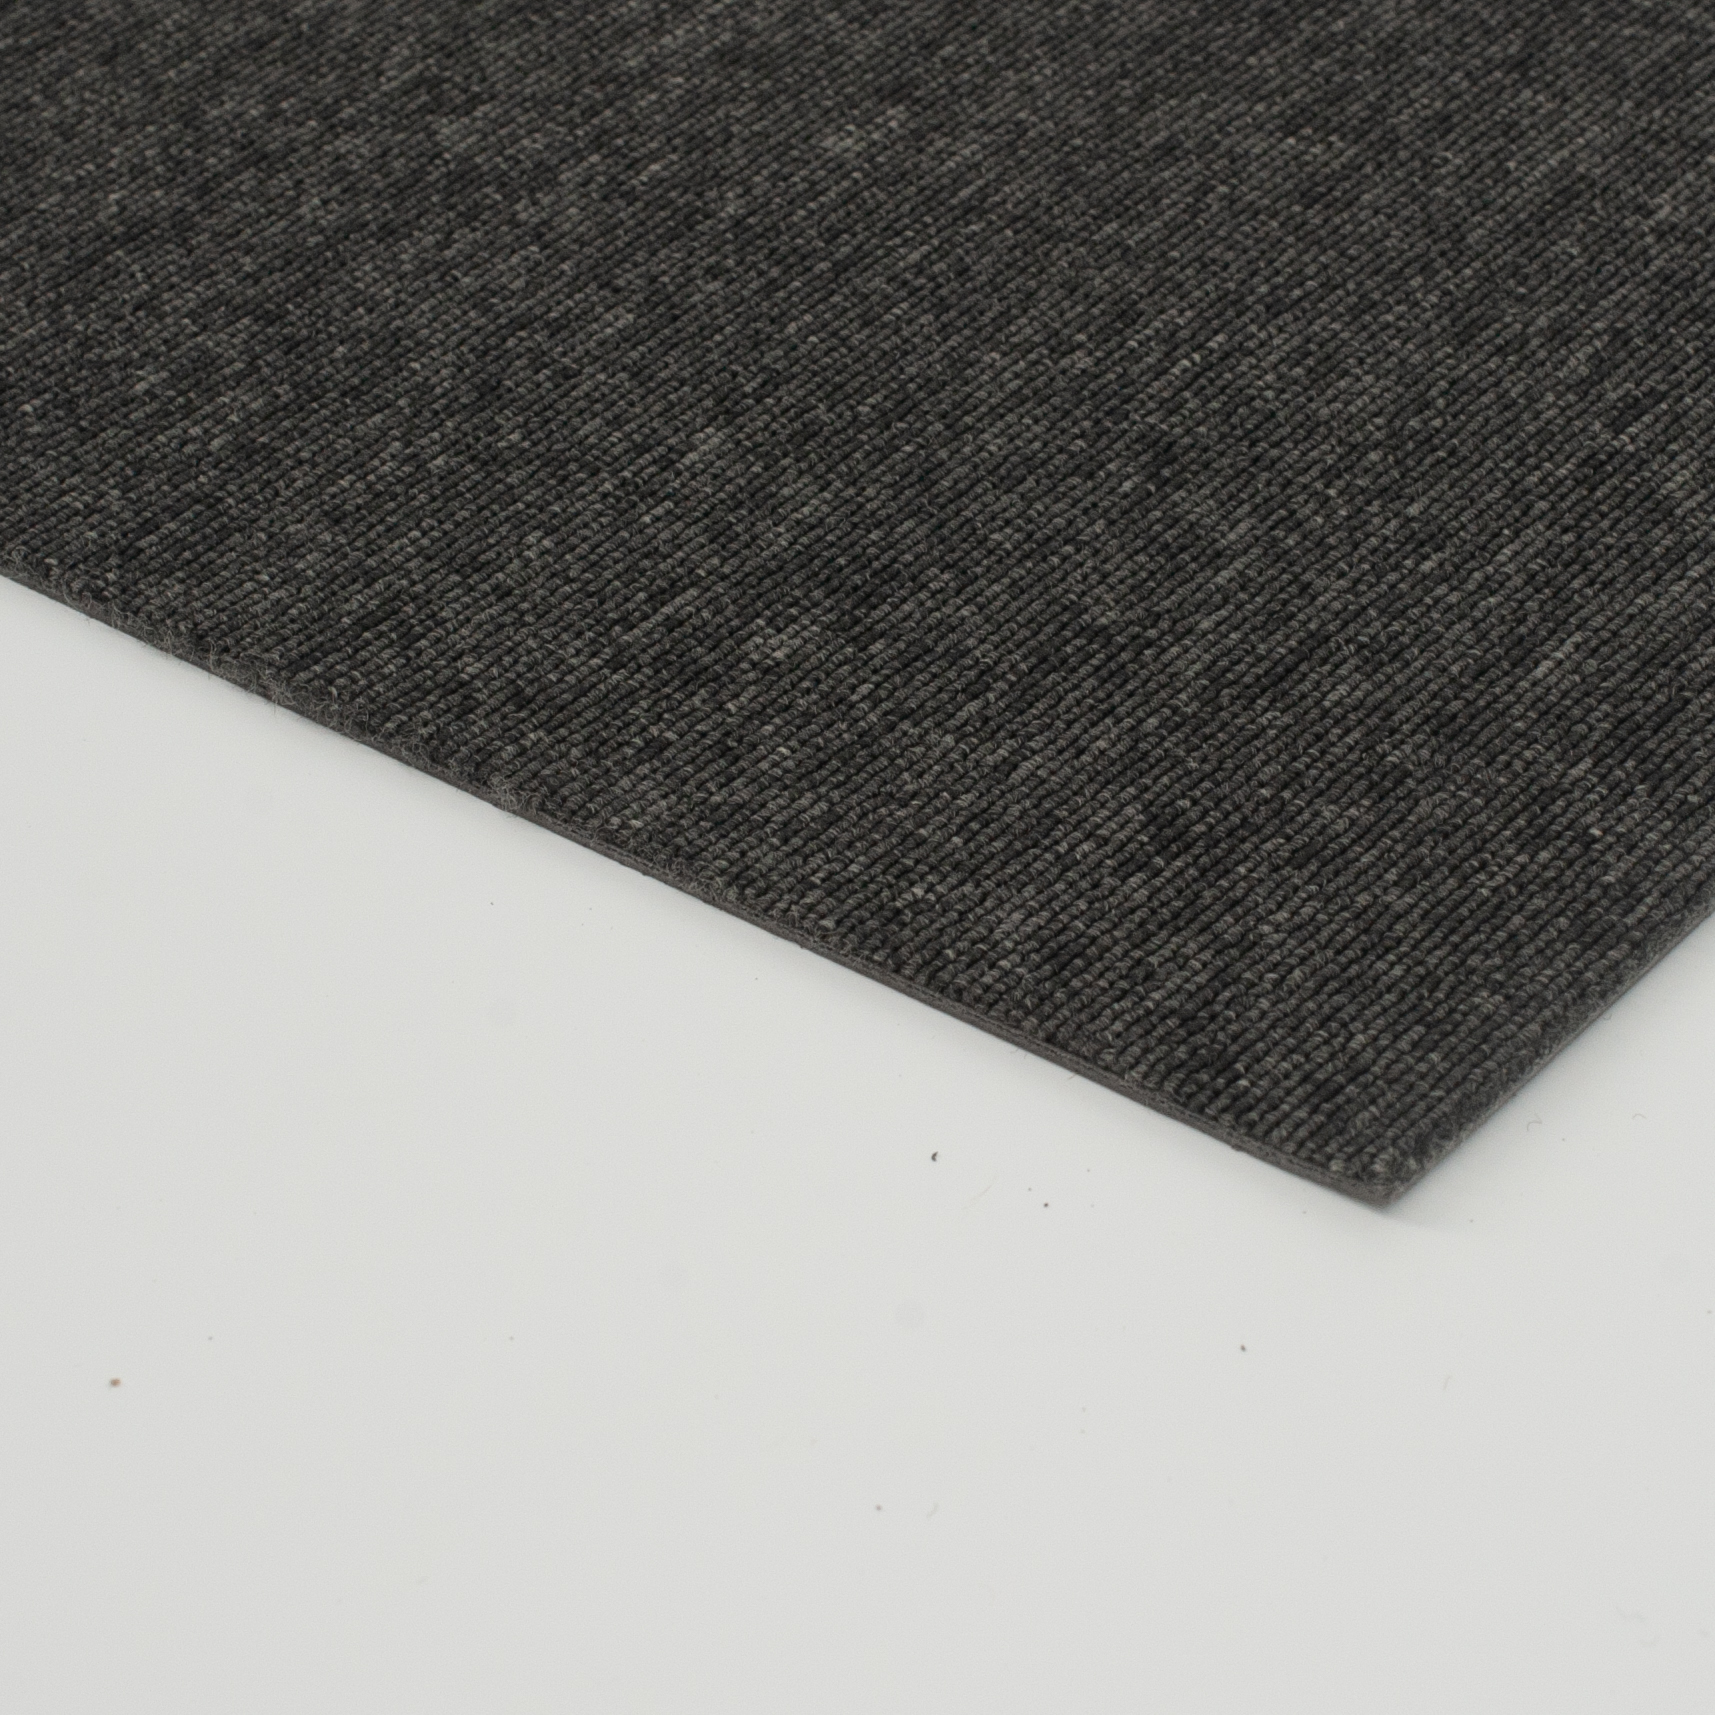 長方形のビニールの黒いカーペットのタイル